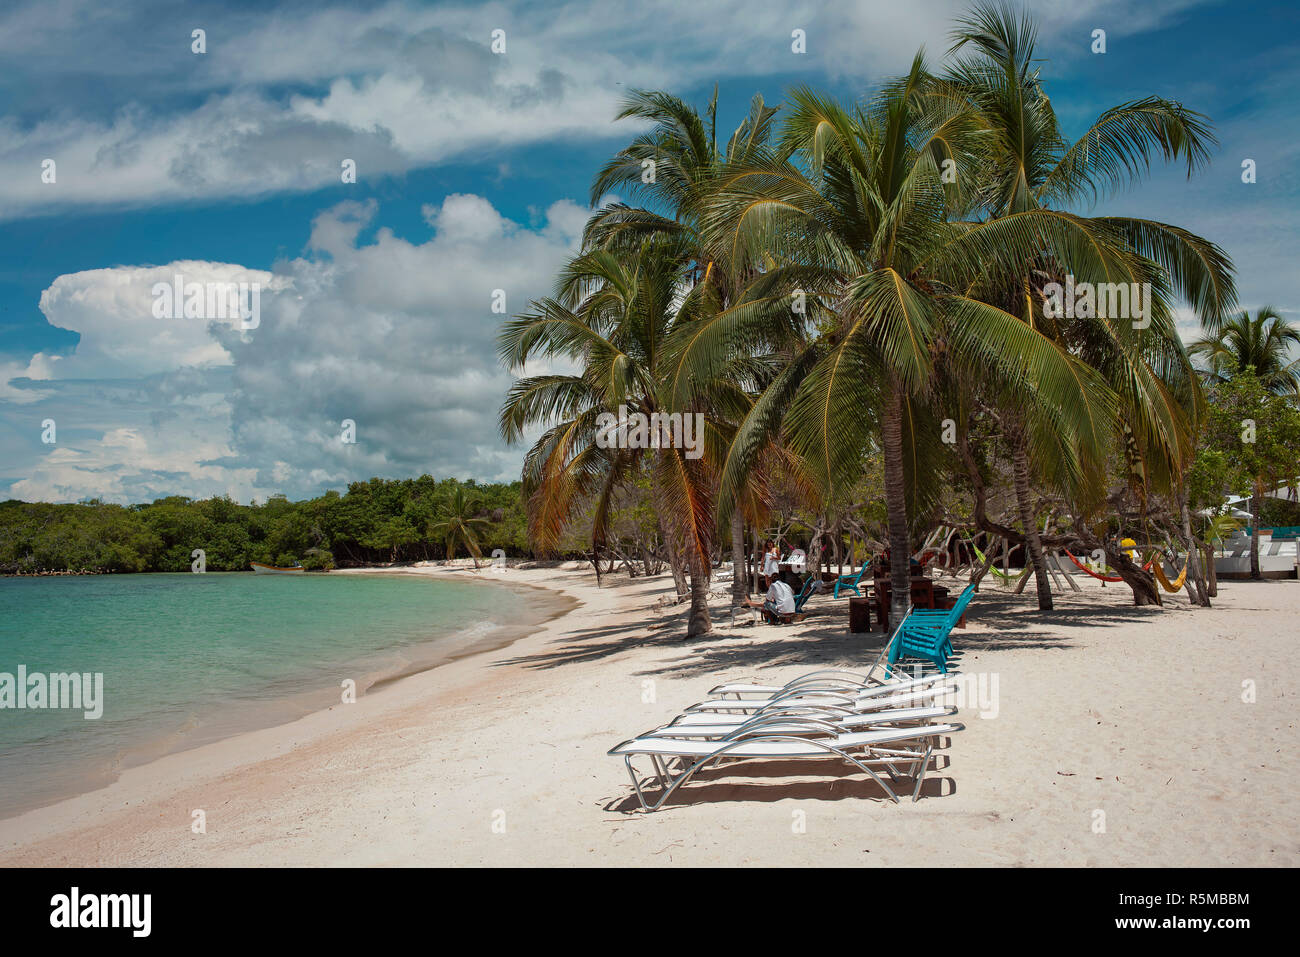 Weißer Sand, Palmen und türkisblaues Wasser. Die privaten Playa Azul ist ein tropisches Paradies Strand, Teil der Isla Barú. Cartagena de Indias, Kolumbien. Okt 2018 Stockfoto